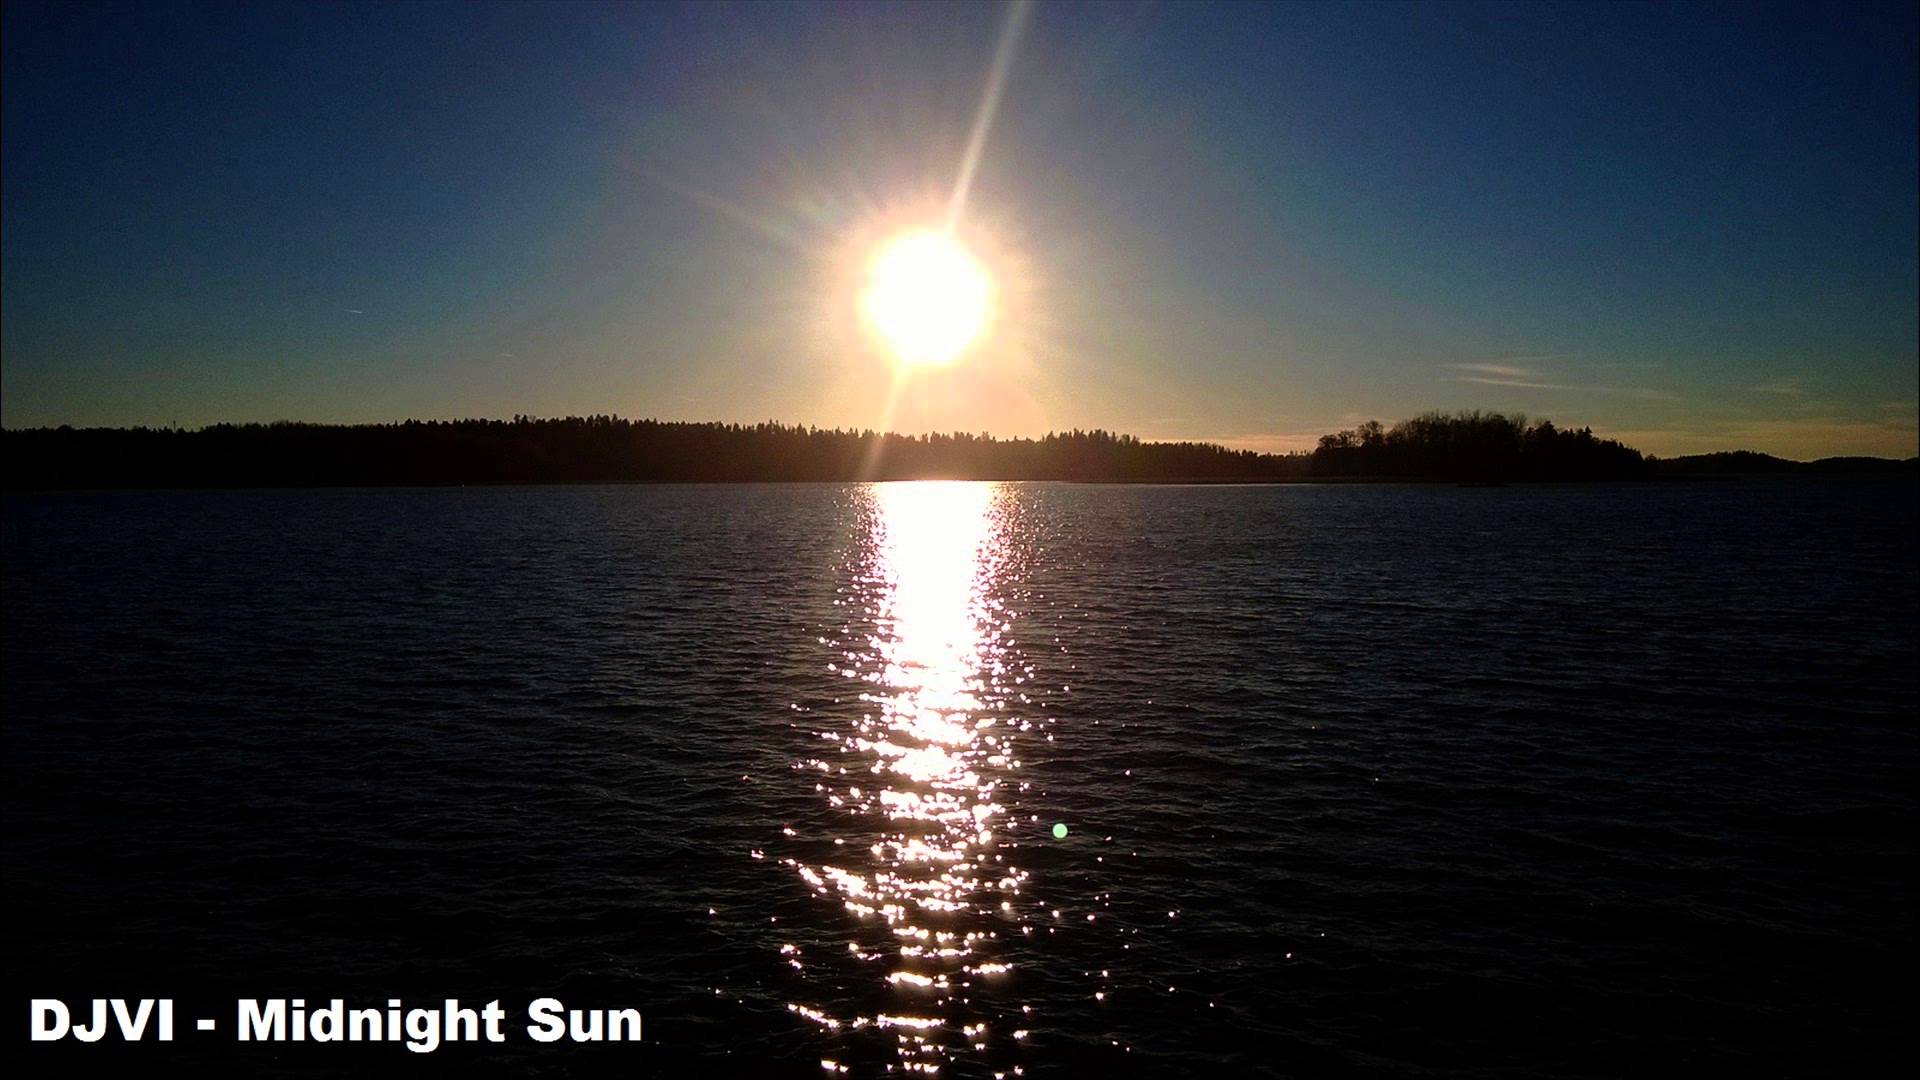 DJVI - Midnight Sun - YouTube